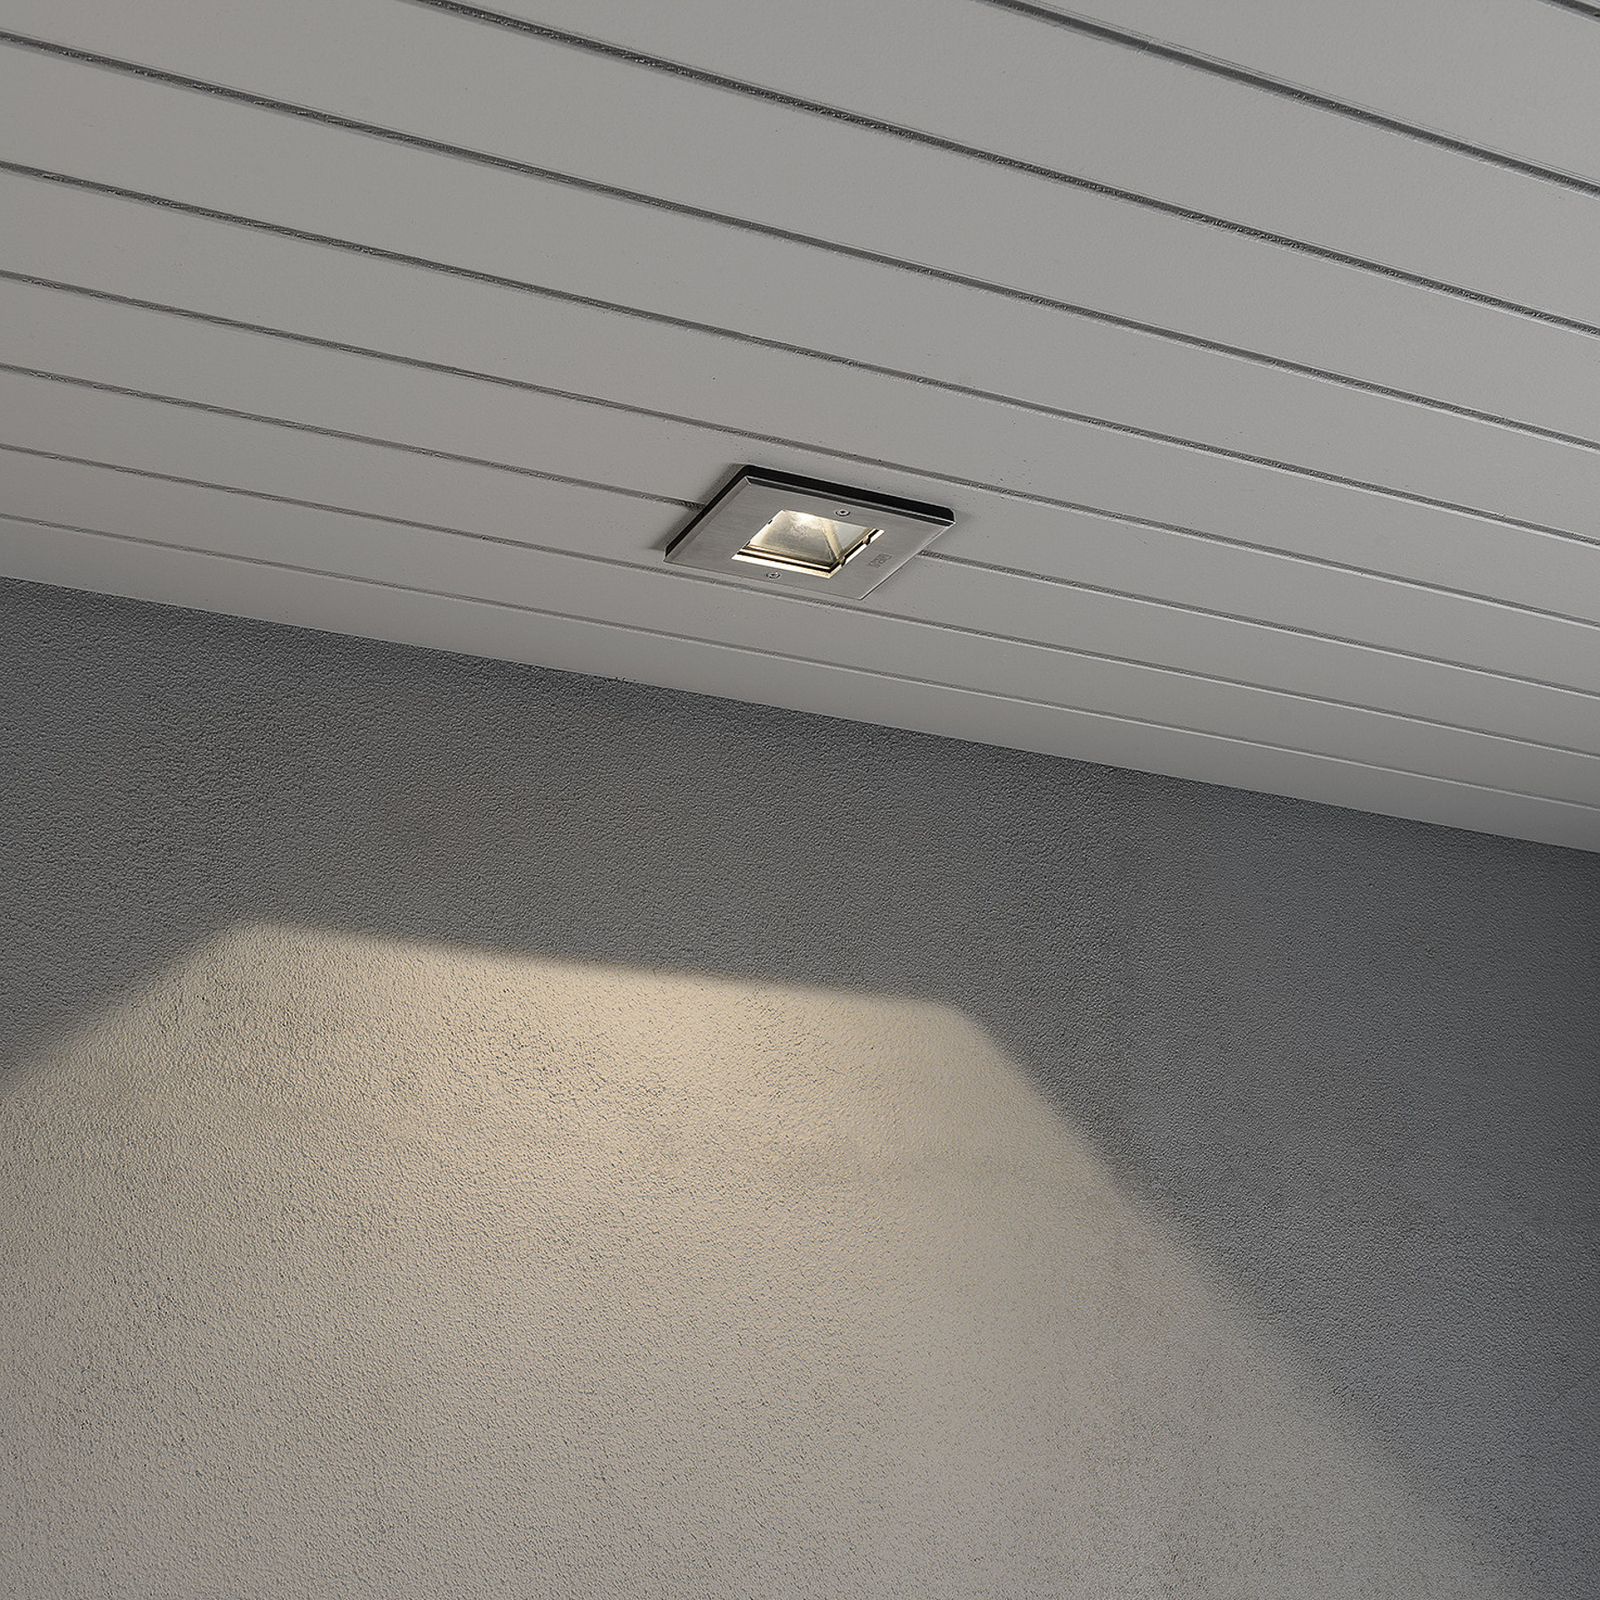 LED stropní spot Recessed Spot, ruční výroba v EU